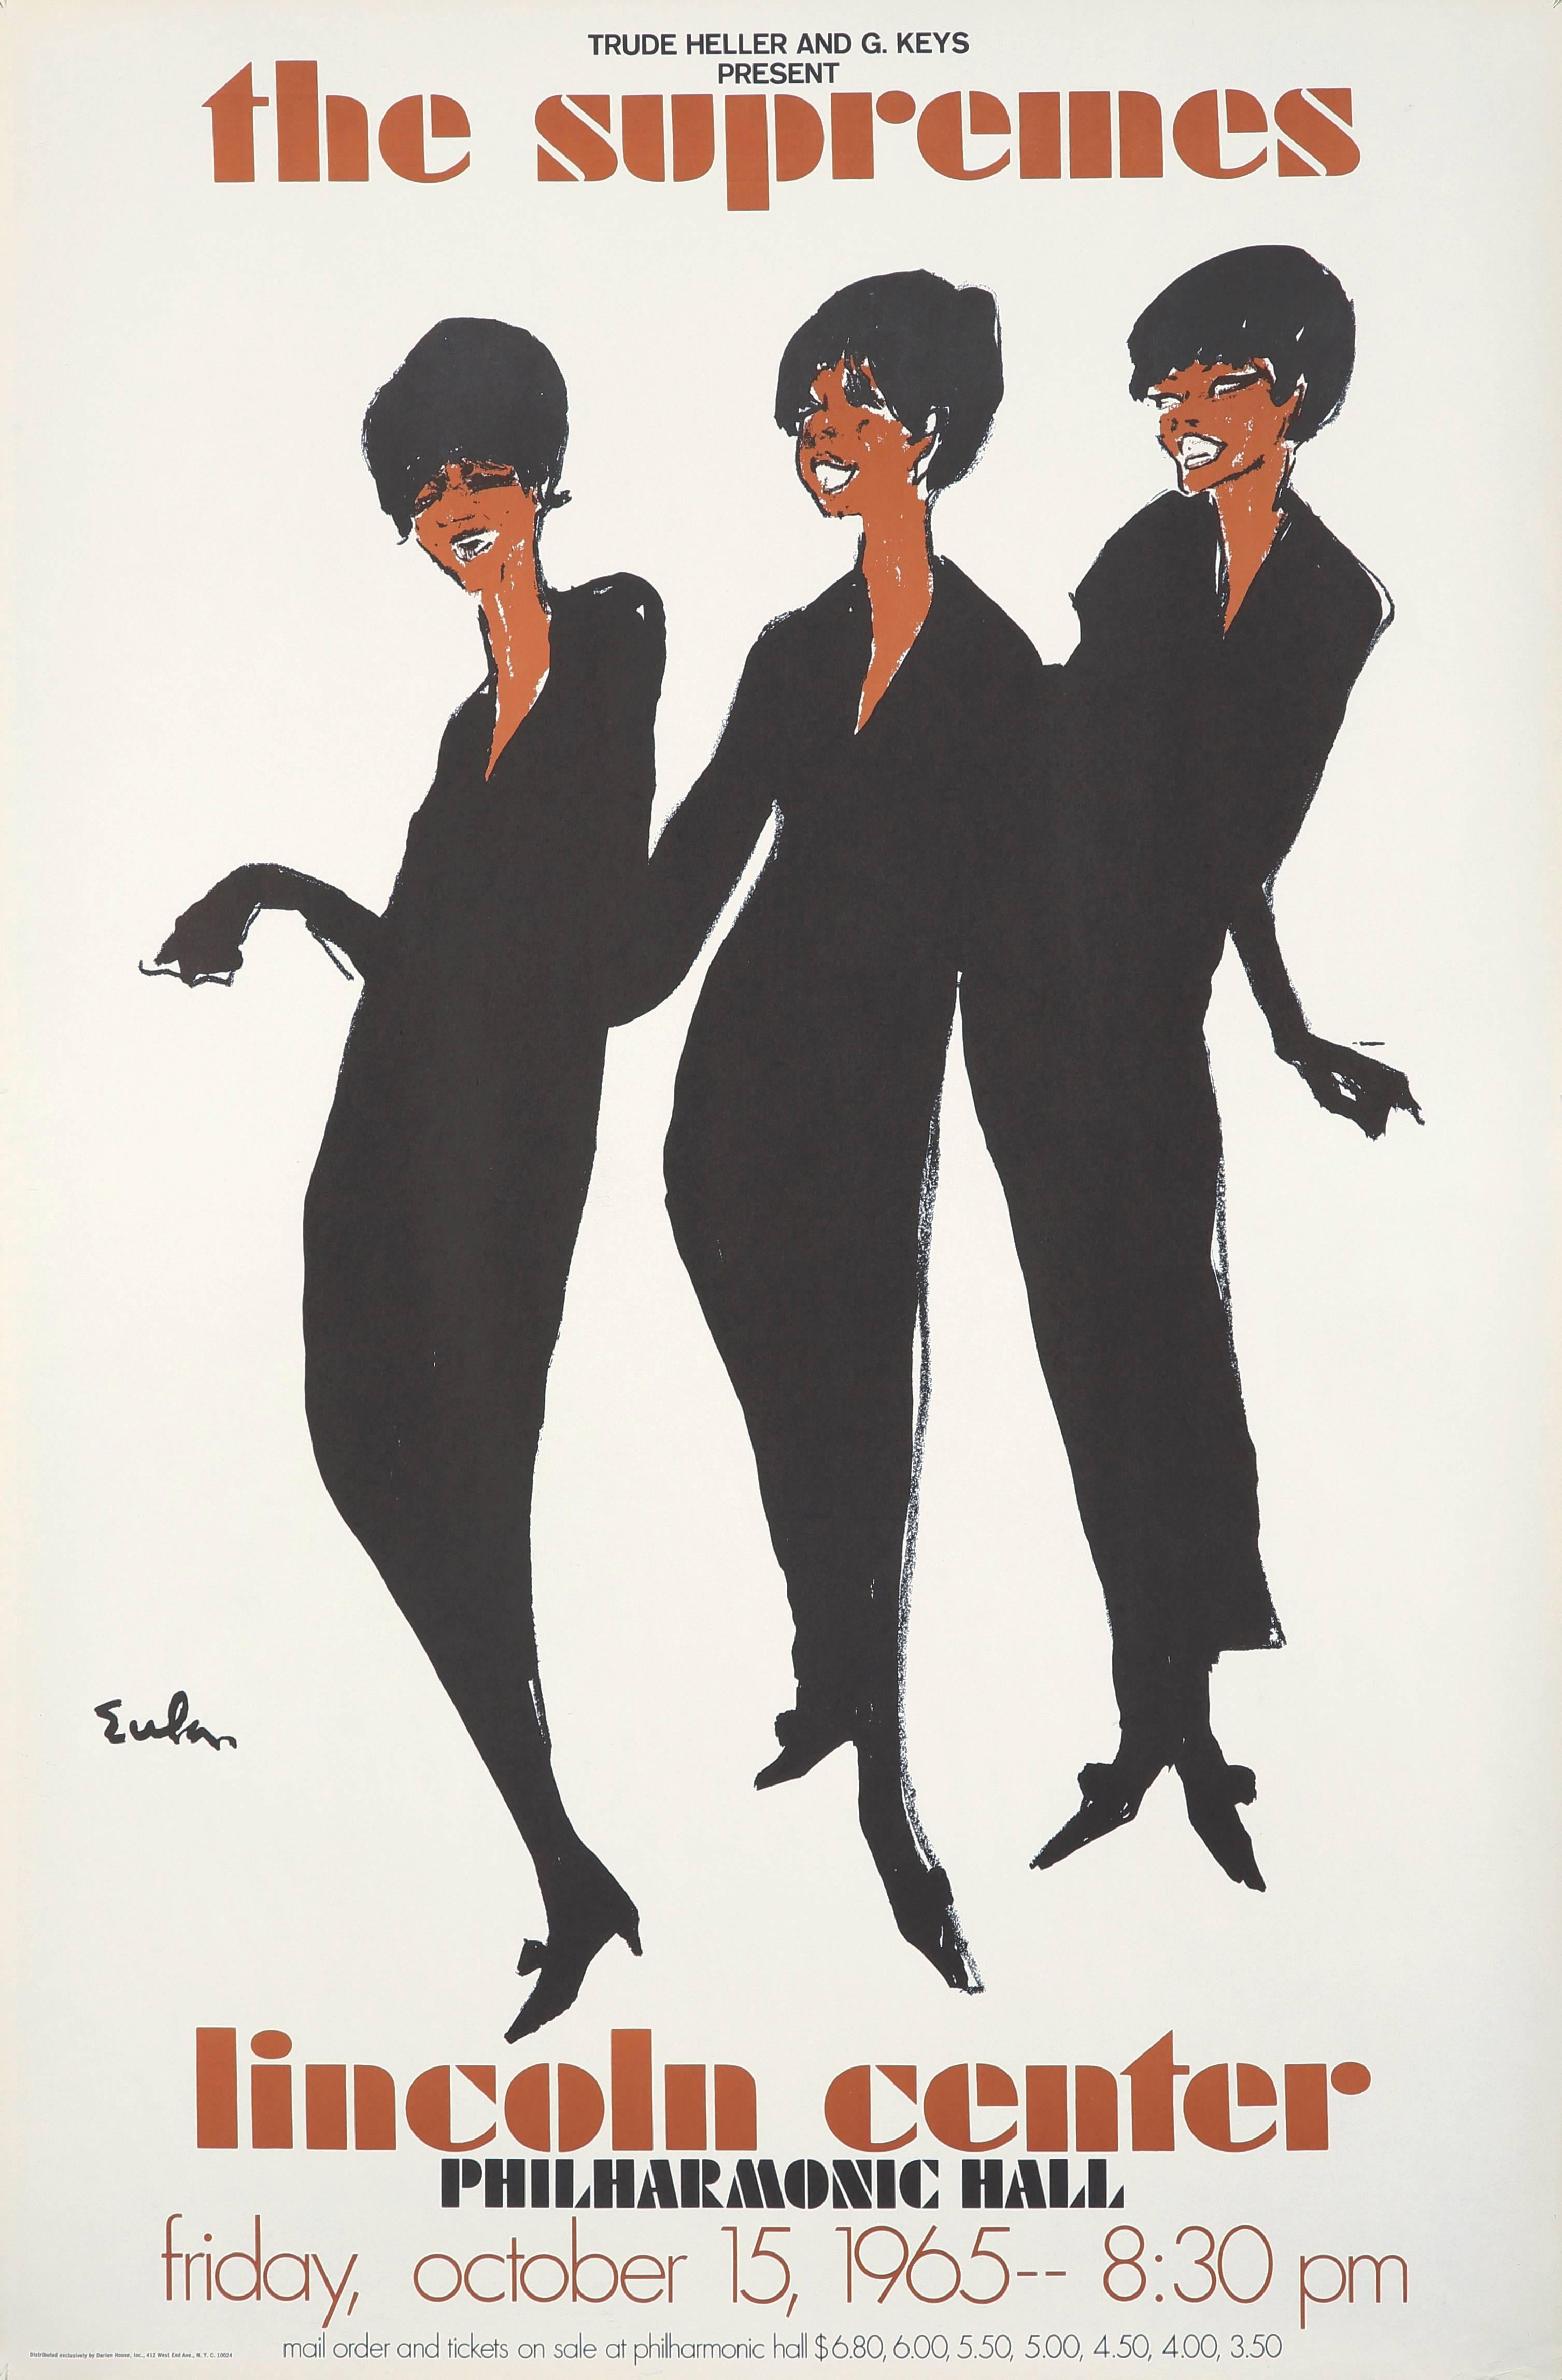 Joe Eula, altes Original-Promo-Poster der Supremes:
Dieses modische und gefühlvolle Werk, das zu Eulas berühmtesten Illustrationen zählt, wurde 1965 veröffentlicht, um für das Konzert der legendären Motown-Gruppe im Lincoln Center (15.10.65) zu